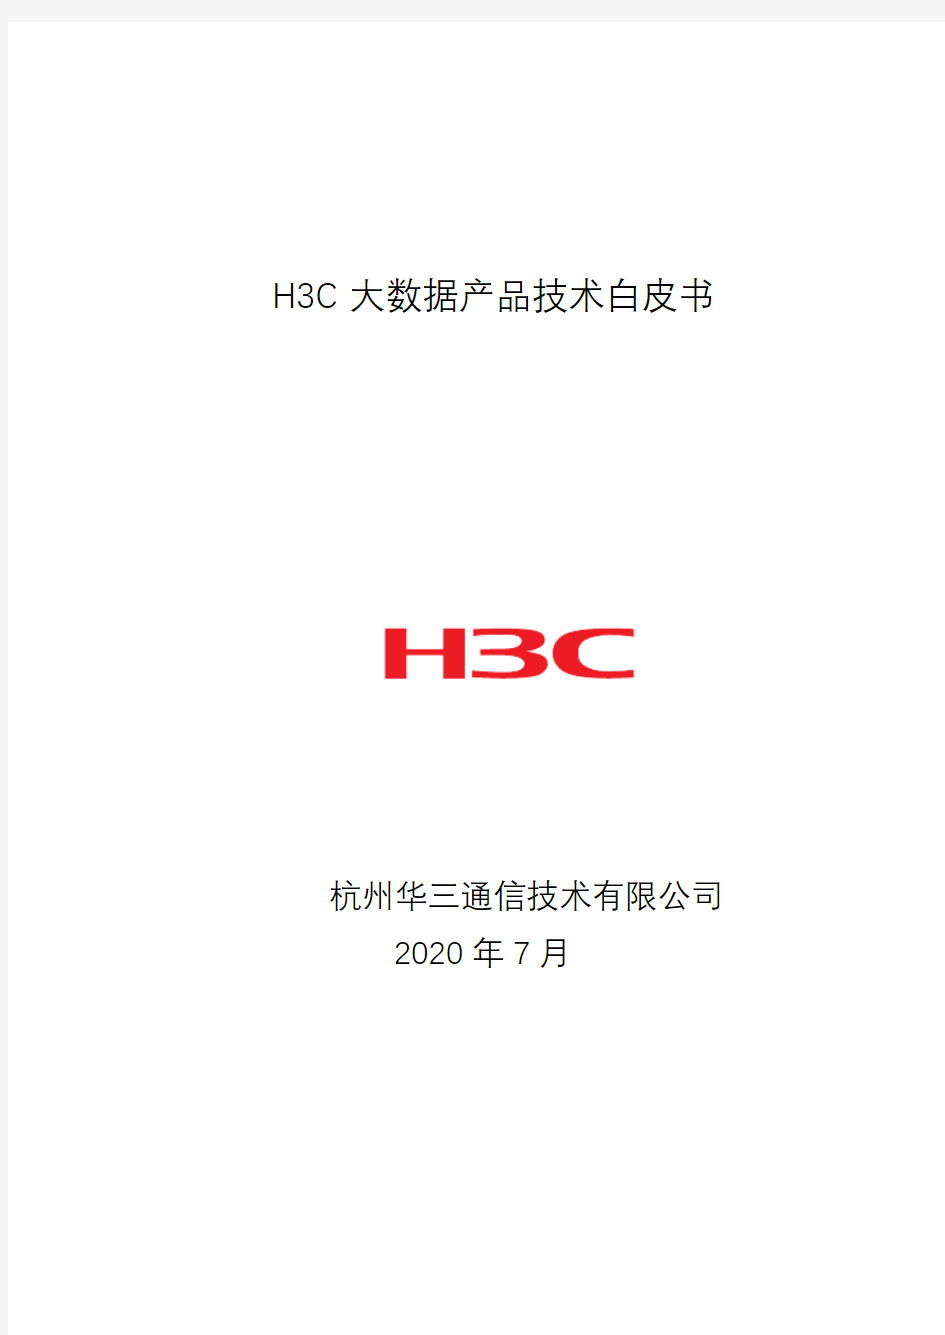 2019年H3C大数据产品技术白皮书